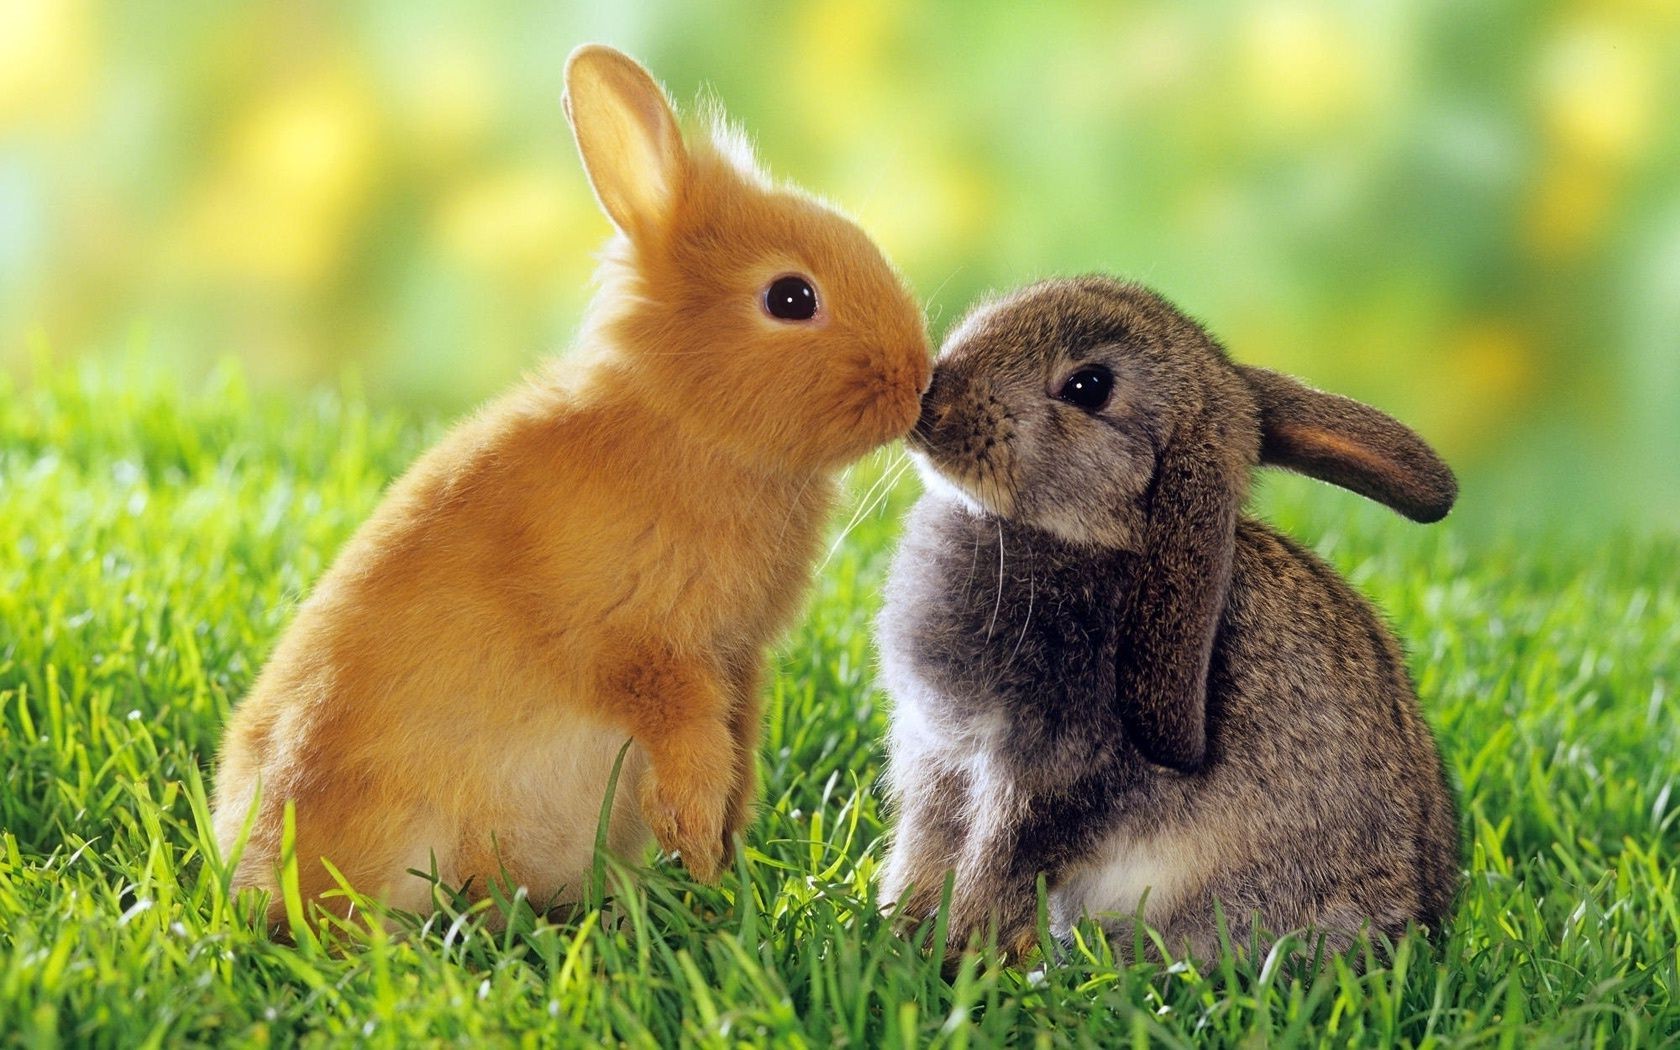 кролики трава милые кролик животное млекопитающее мало природа зайчик мех ребенок сидеть грызун пэт очаровательны сенокос молодой пасха